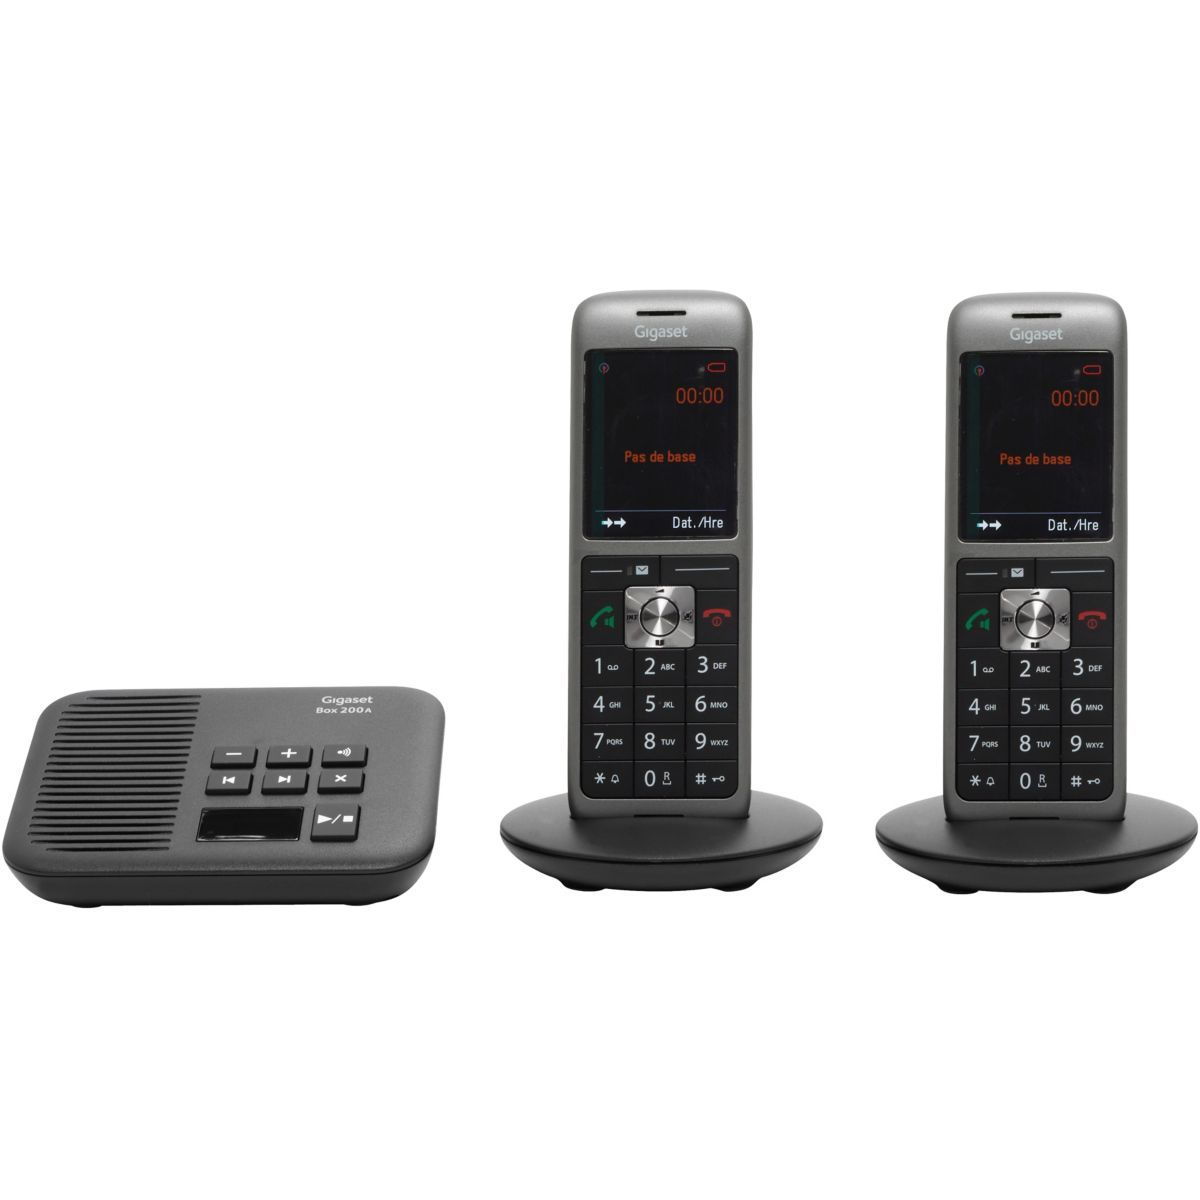 Gigaset CL660A Duo Blanc - Téléphone sans fil - Pro - Répondeur